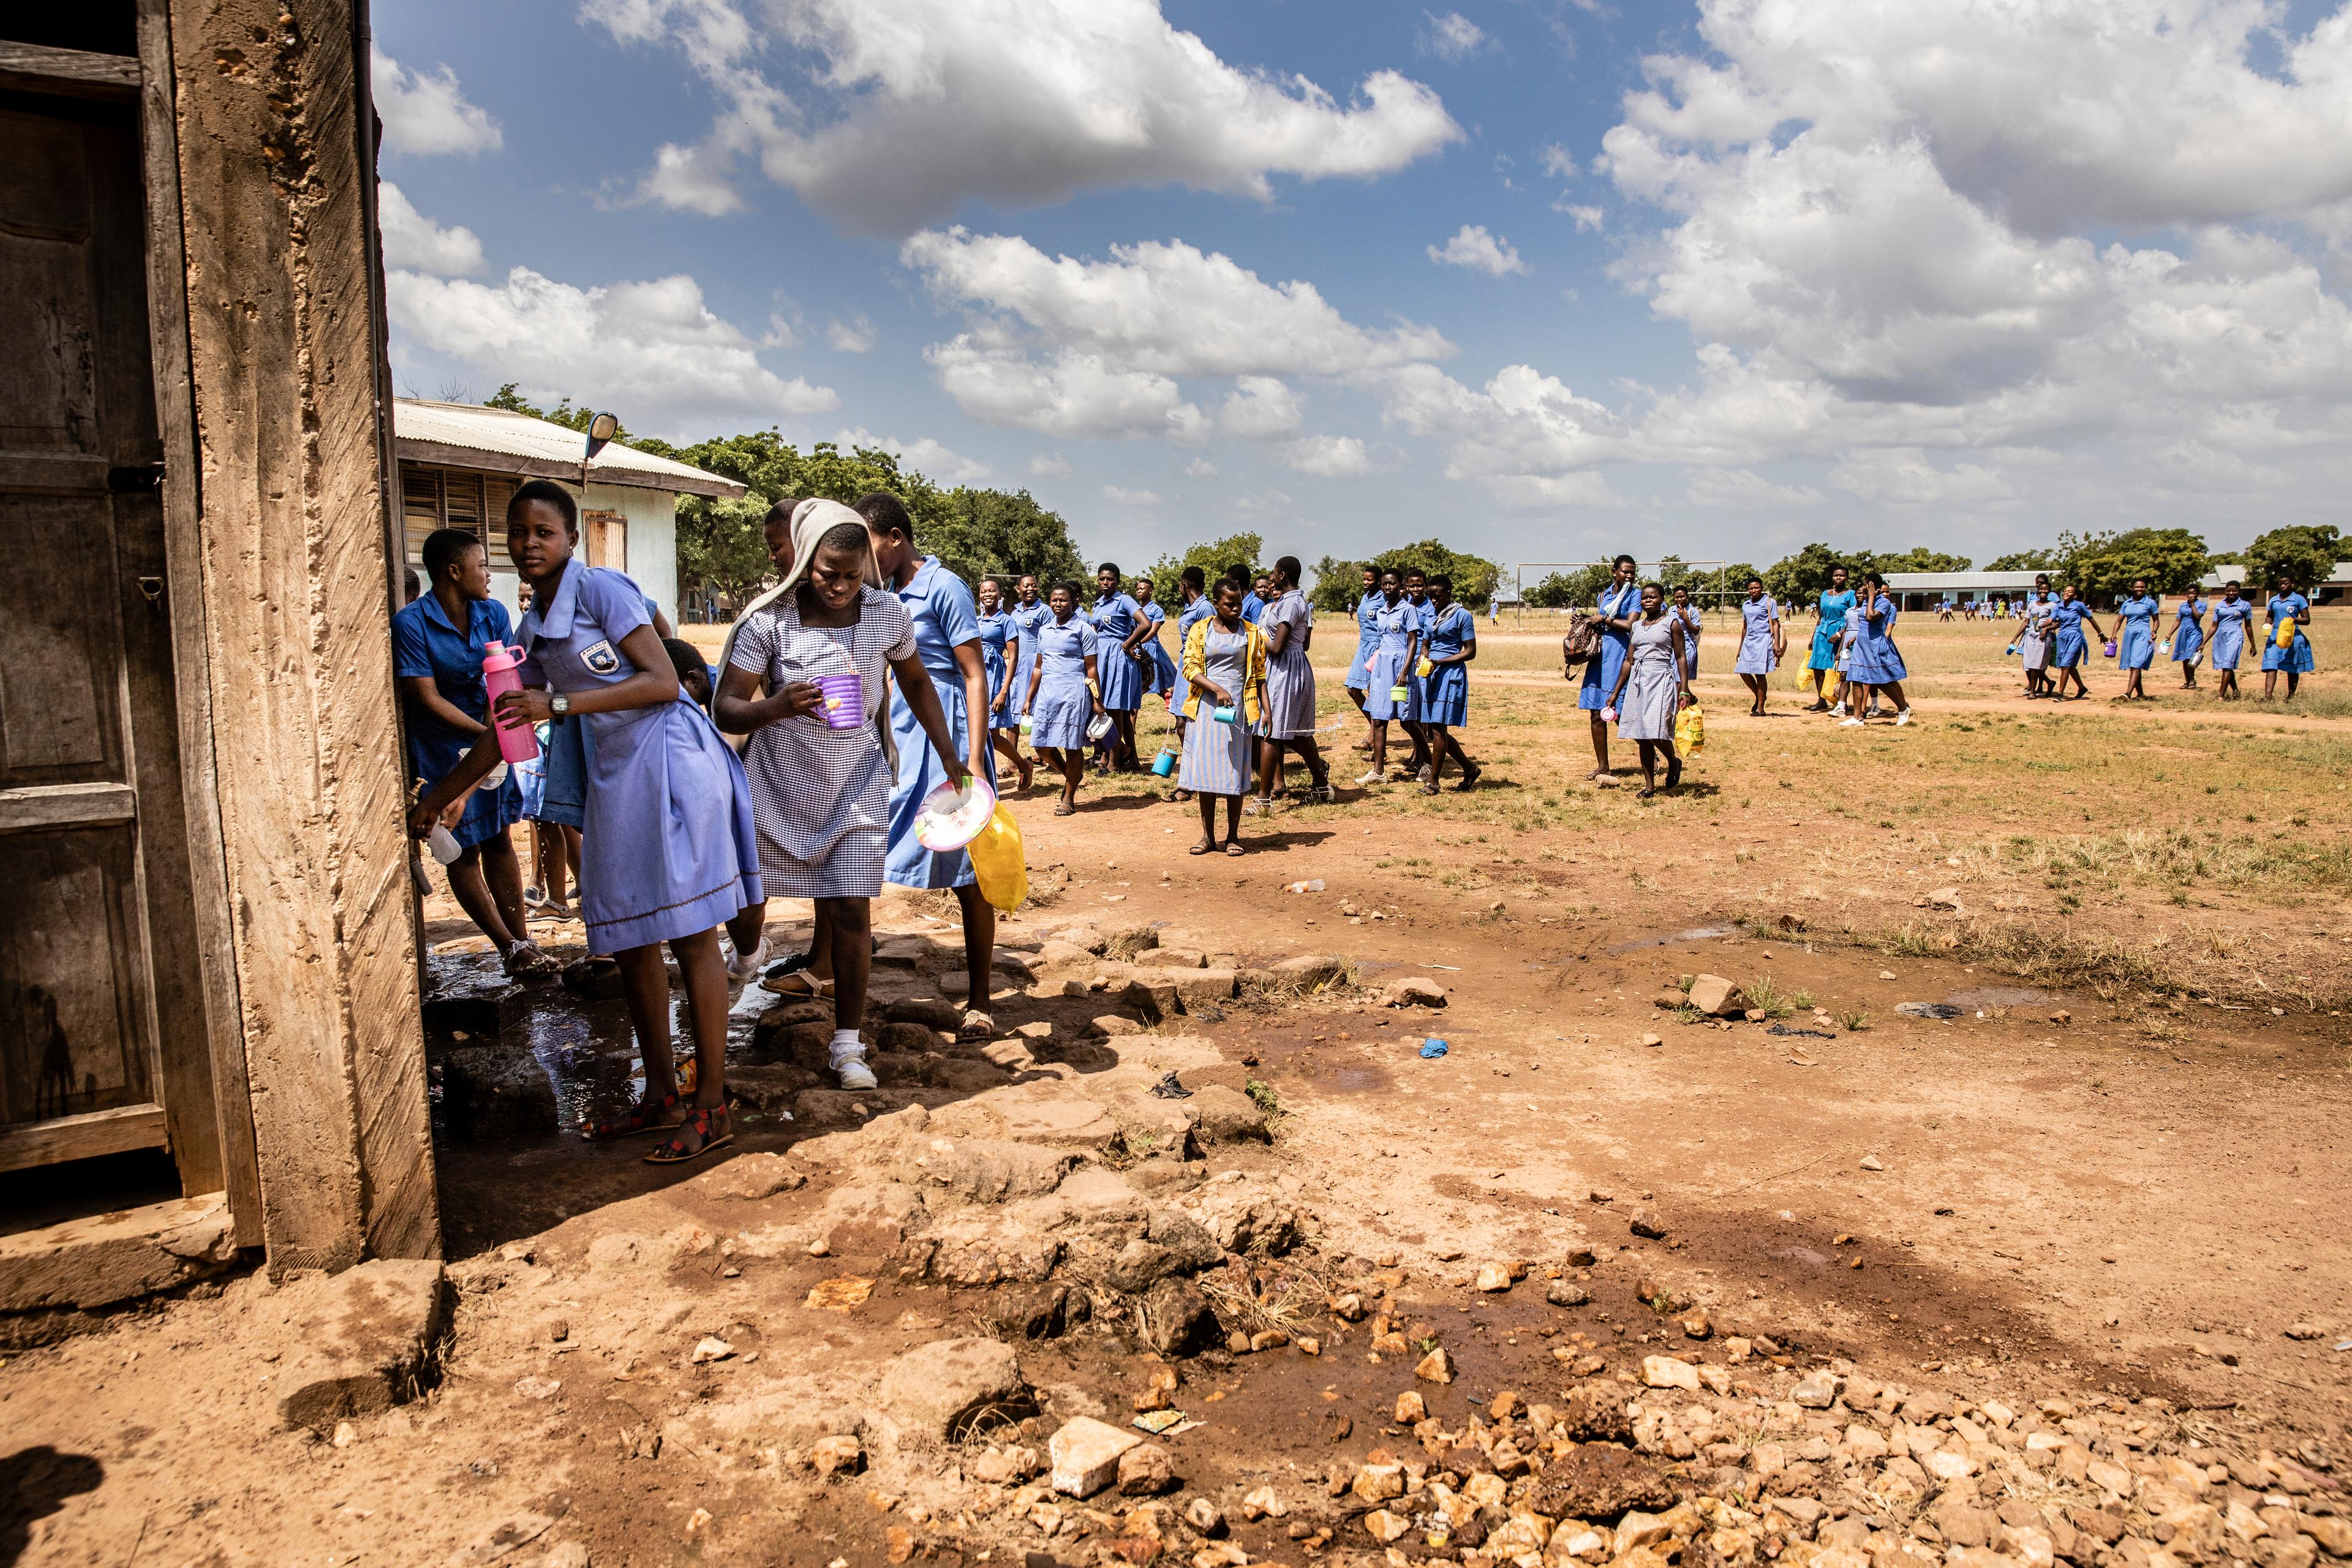 Schülerinnen und Schüler holen sich bei der Wasserstelle Wasser, das sie in Flaschen und sonstige Behälter abfüllen.